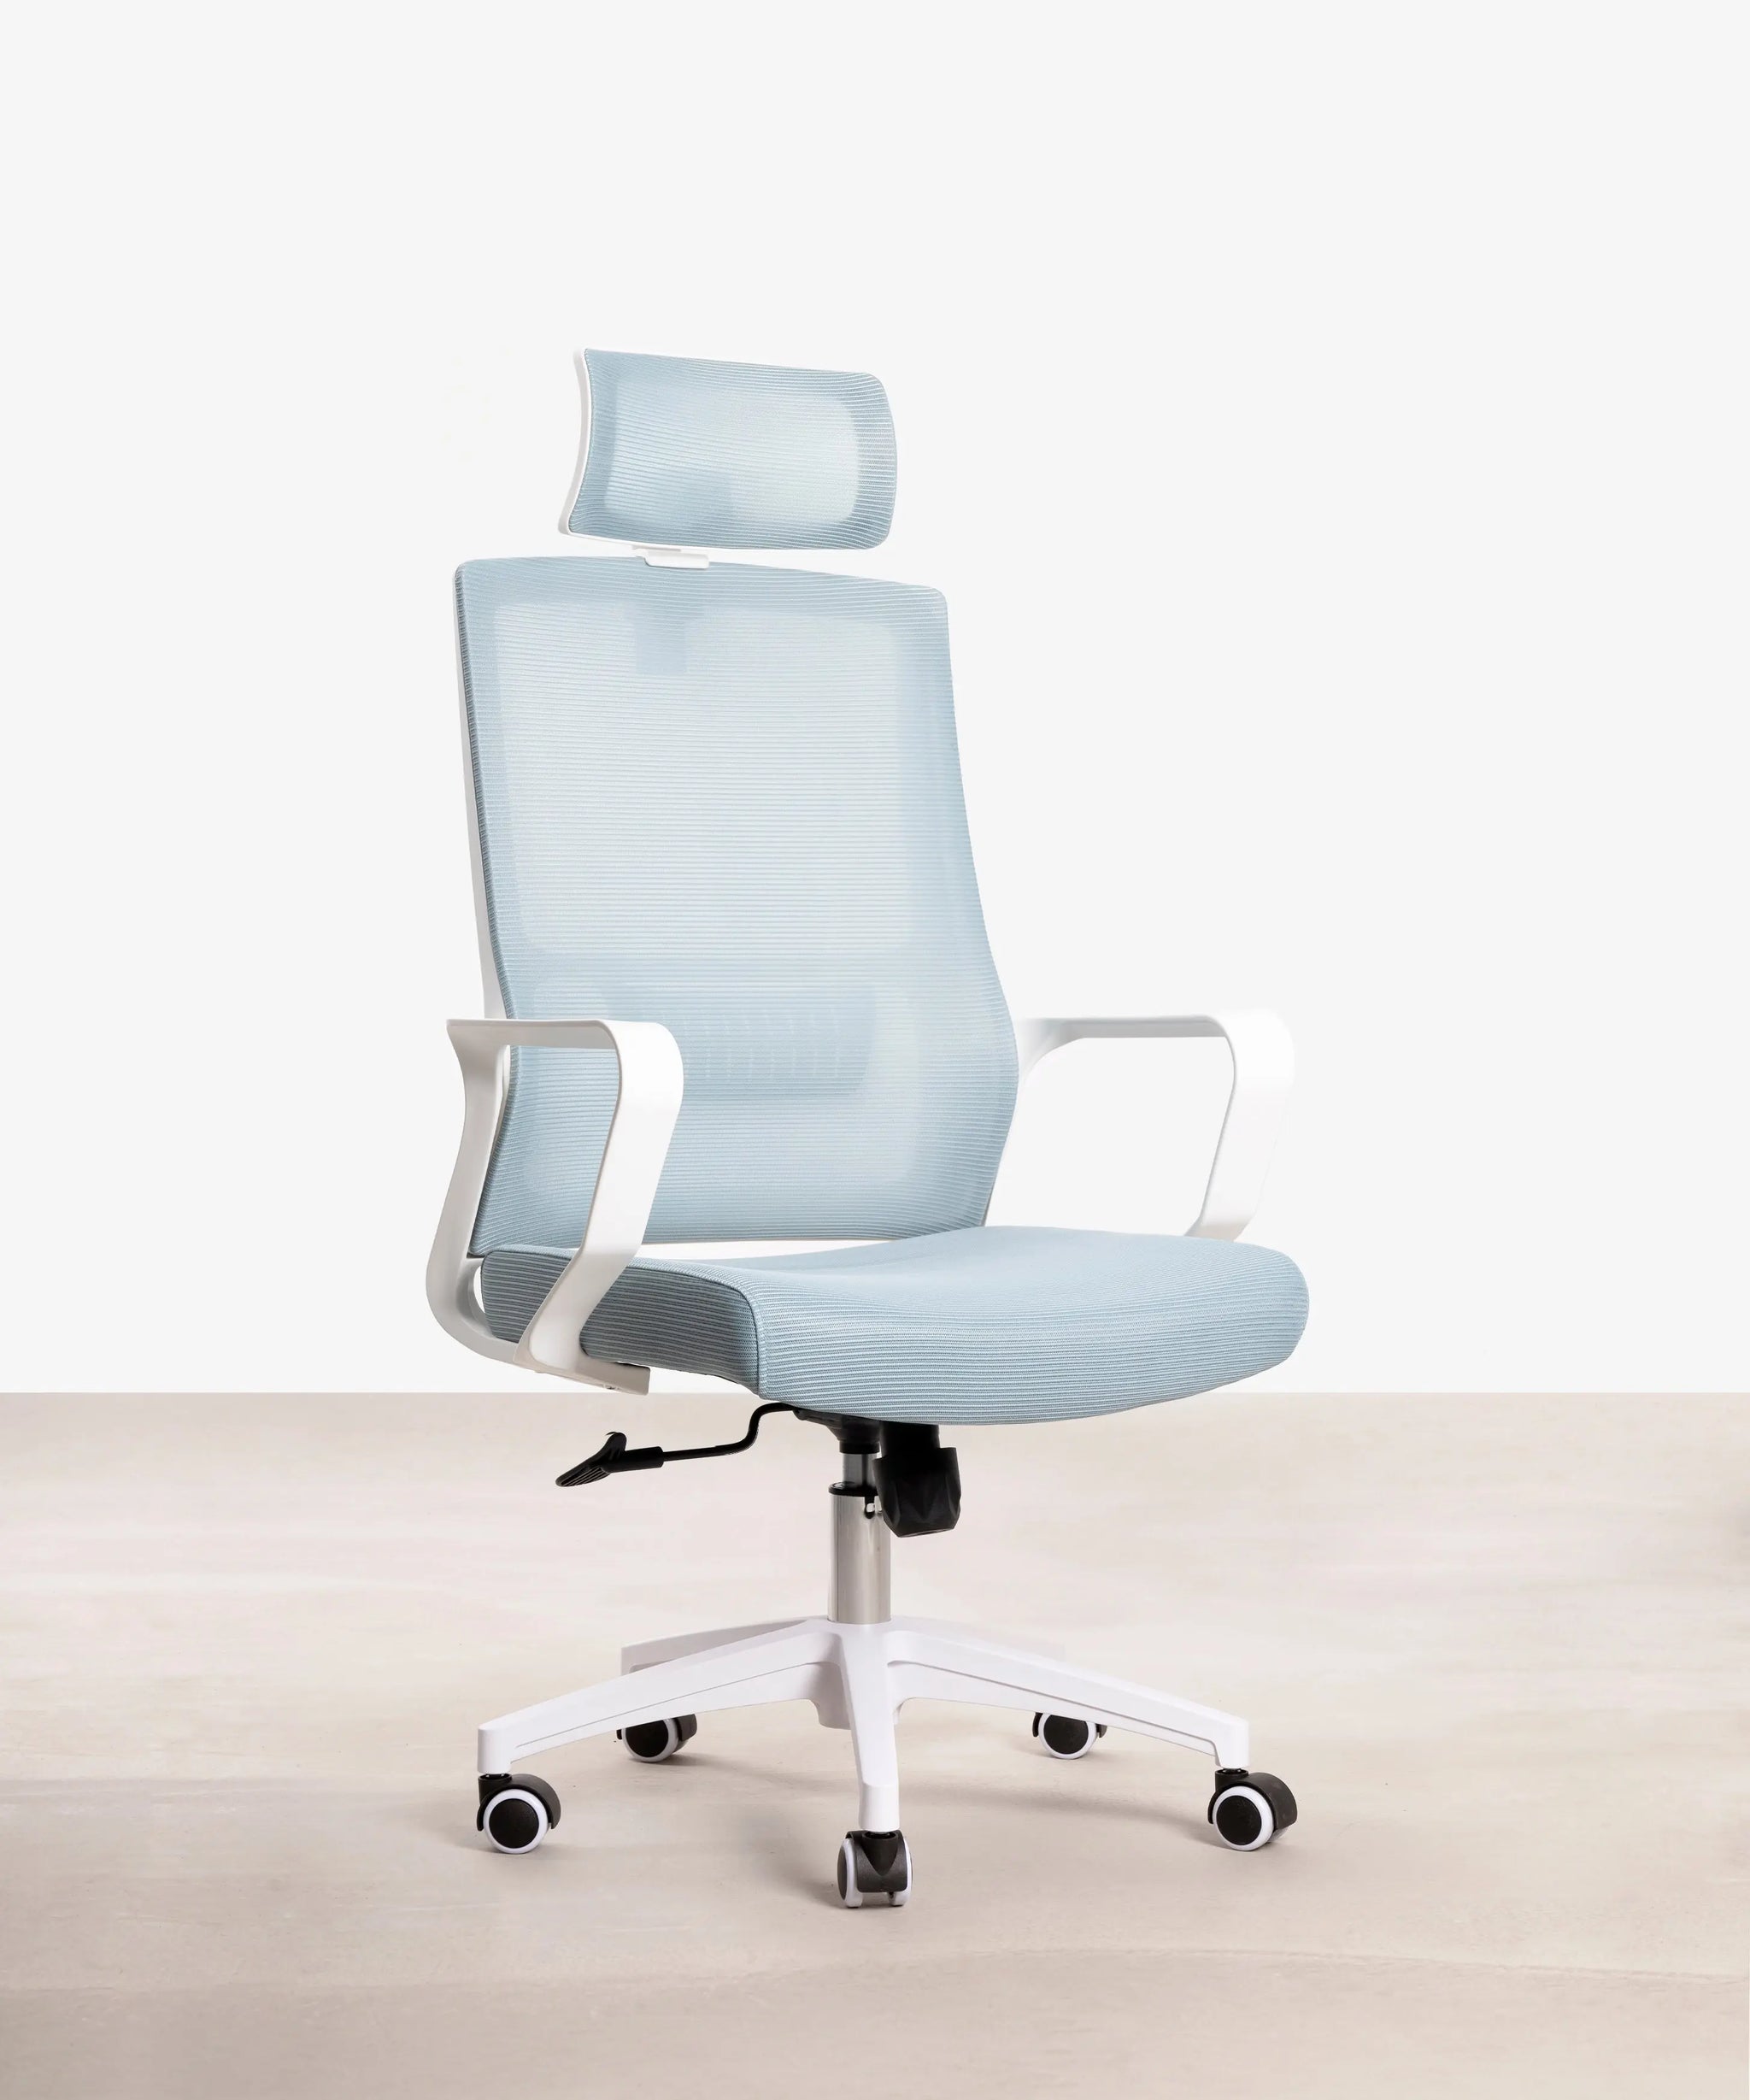 Siège ergonomique Archange avec tablette  fauteuil de bureau ergonomique  avec tablette